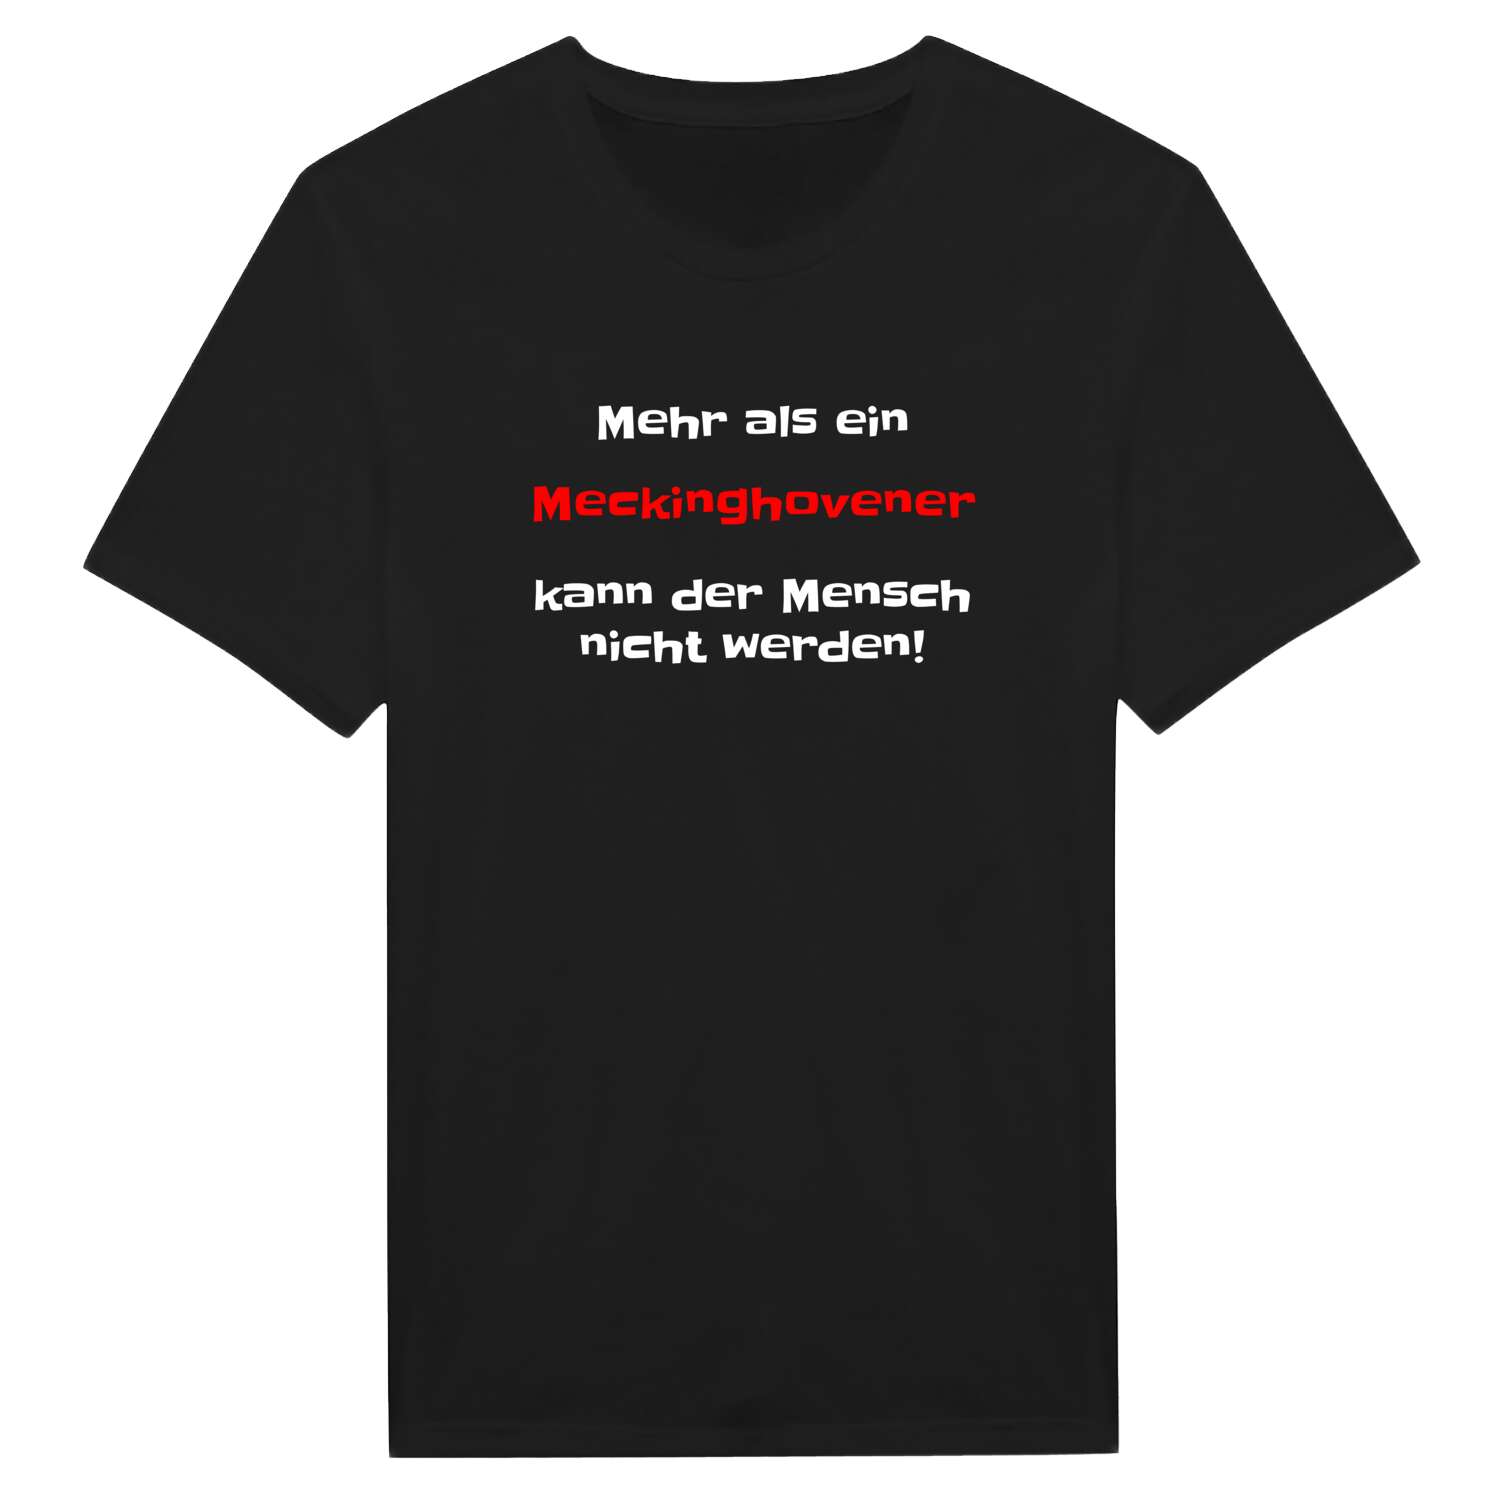 Meckinghoven T-Shirt »Mehr als ein«